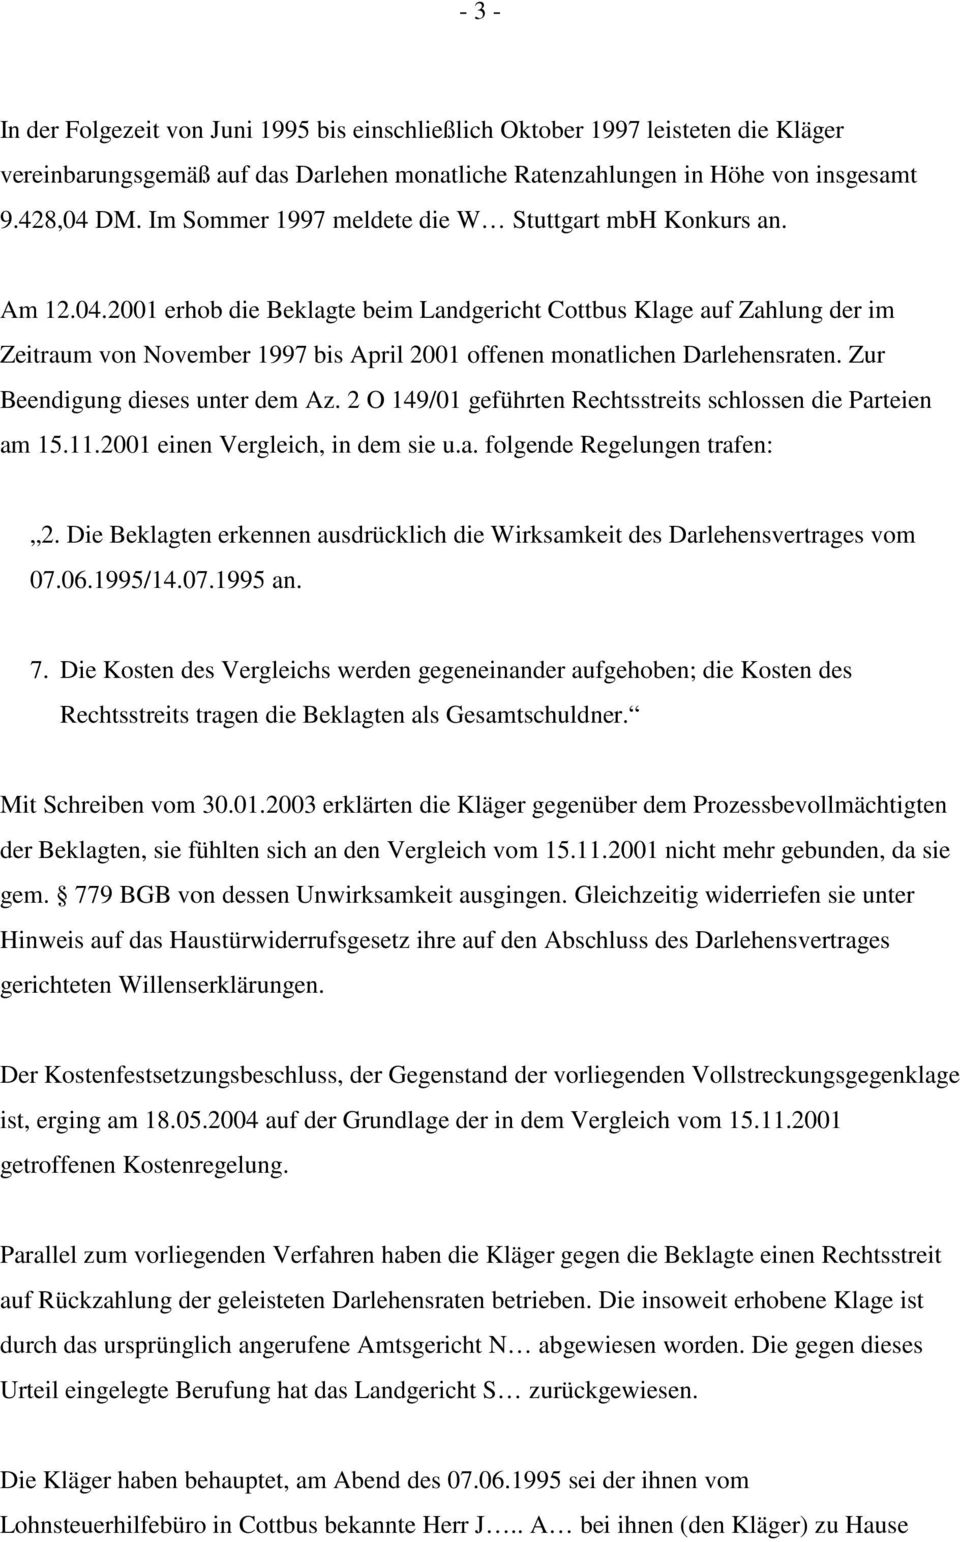 2001 erhob die Beklagte beim Landgericht Cottbus Klage auf Zahlung der im Zeitraum von November 1997 bis April 2001 offenen monatlichen Darlehensraten. Zur Beendigung dieses unter dem Az.